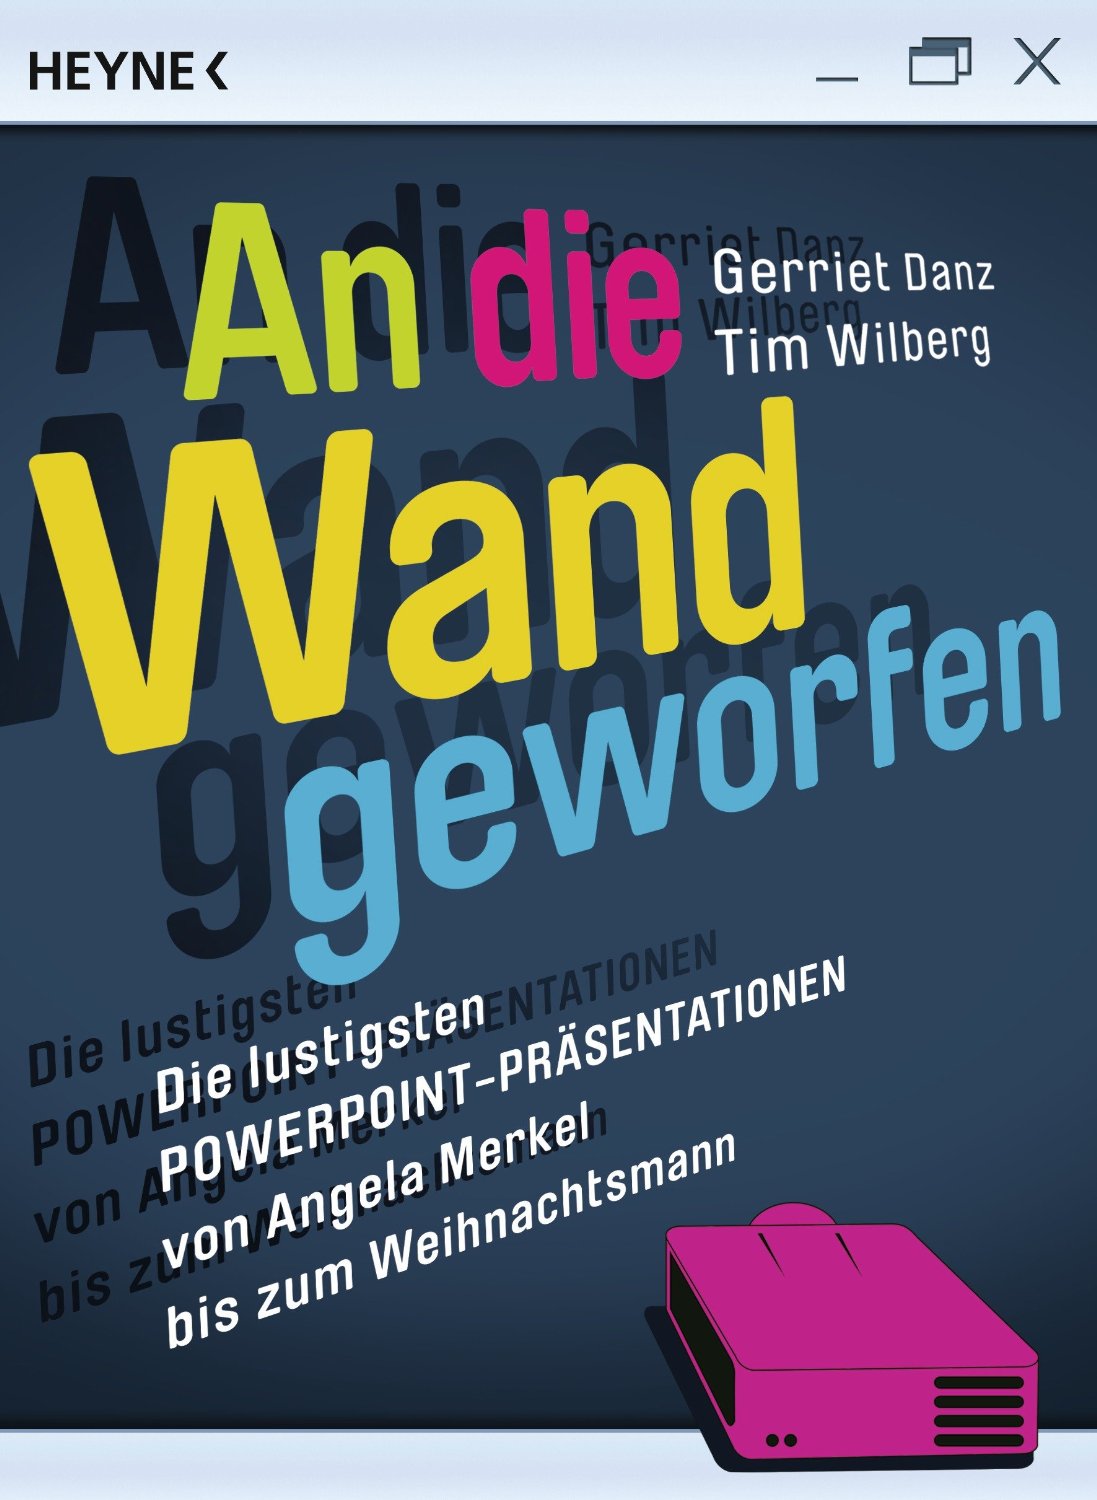 Deutsche-Politik-News.de | An die Wand geworfen, Gerriet Danz und Tim Wilberg, Heyne Verlag